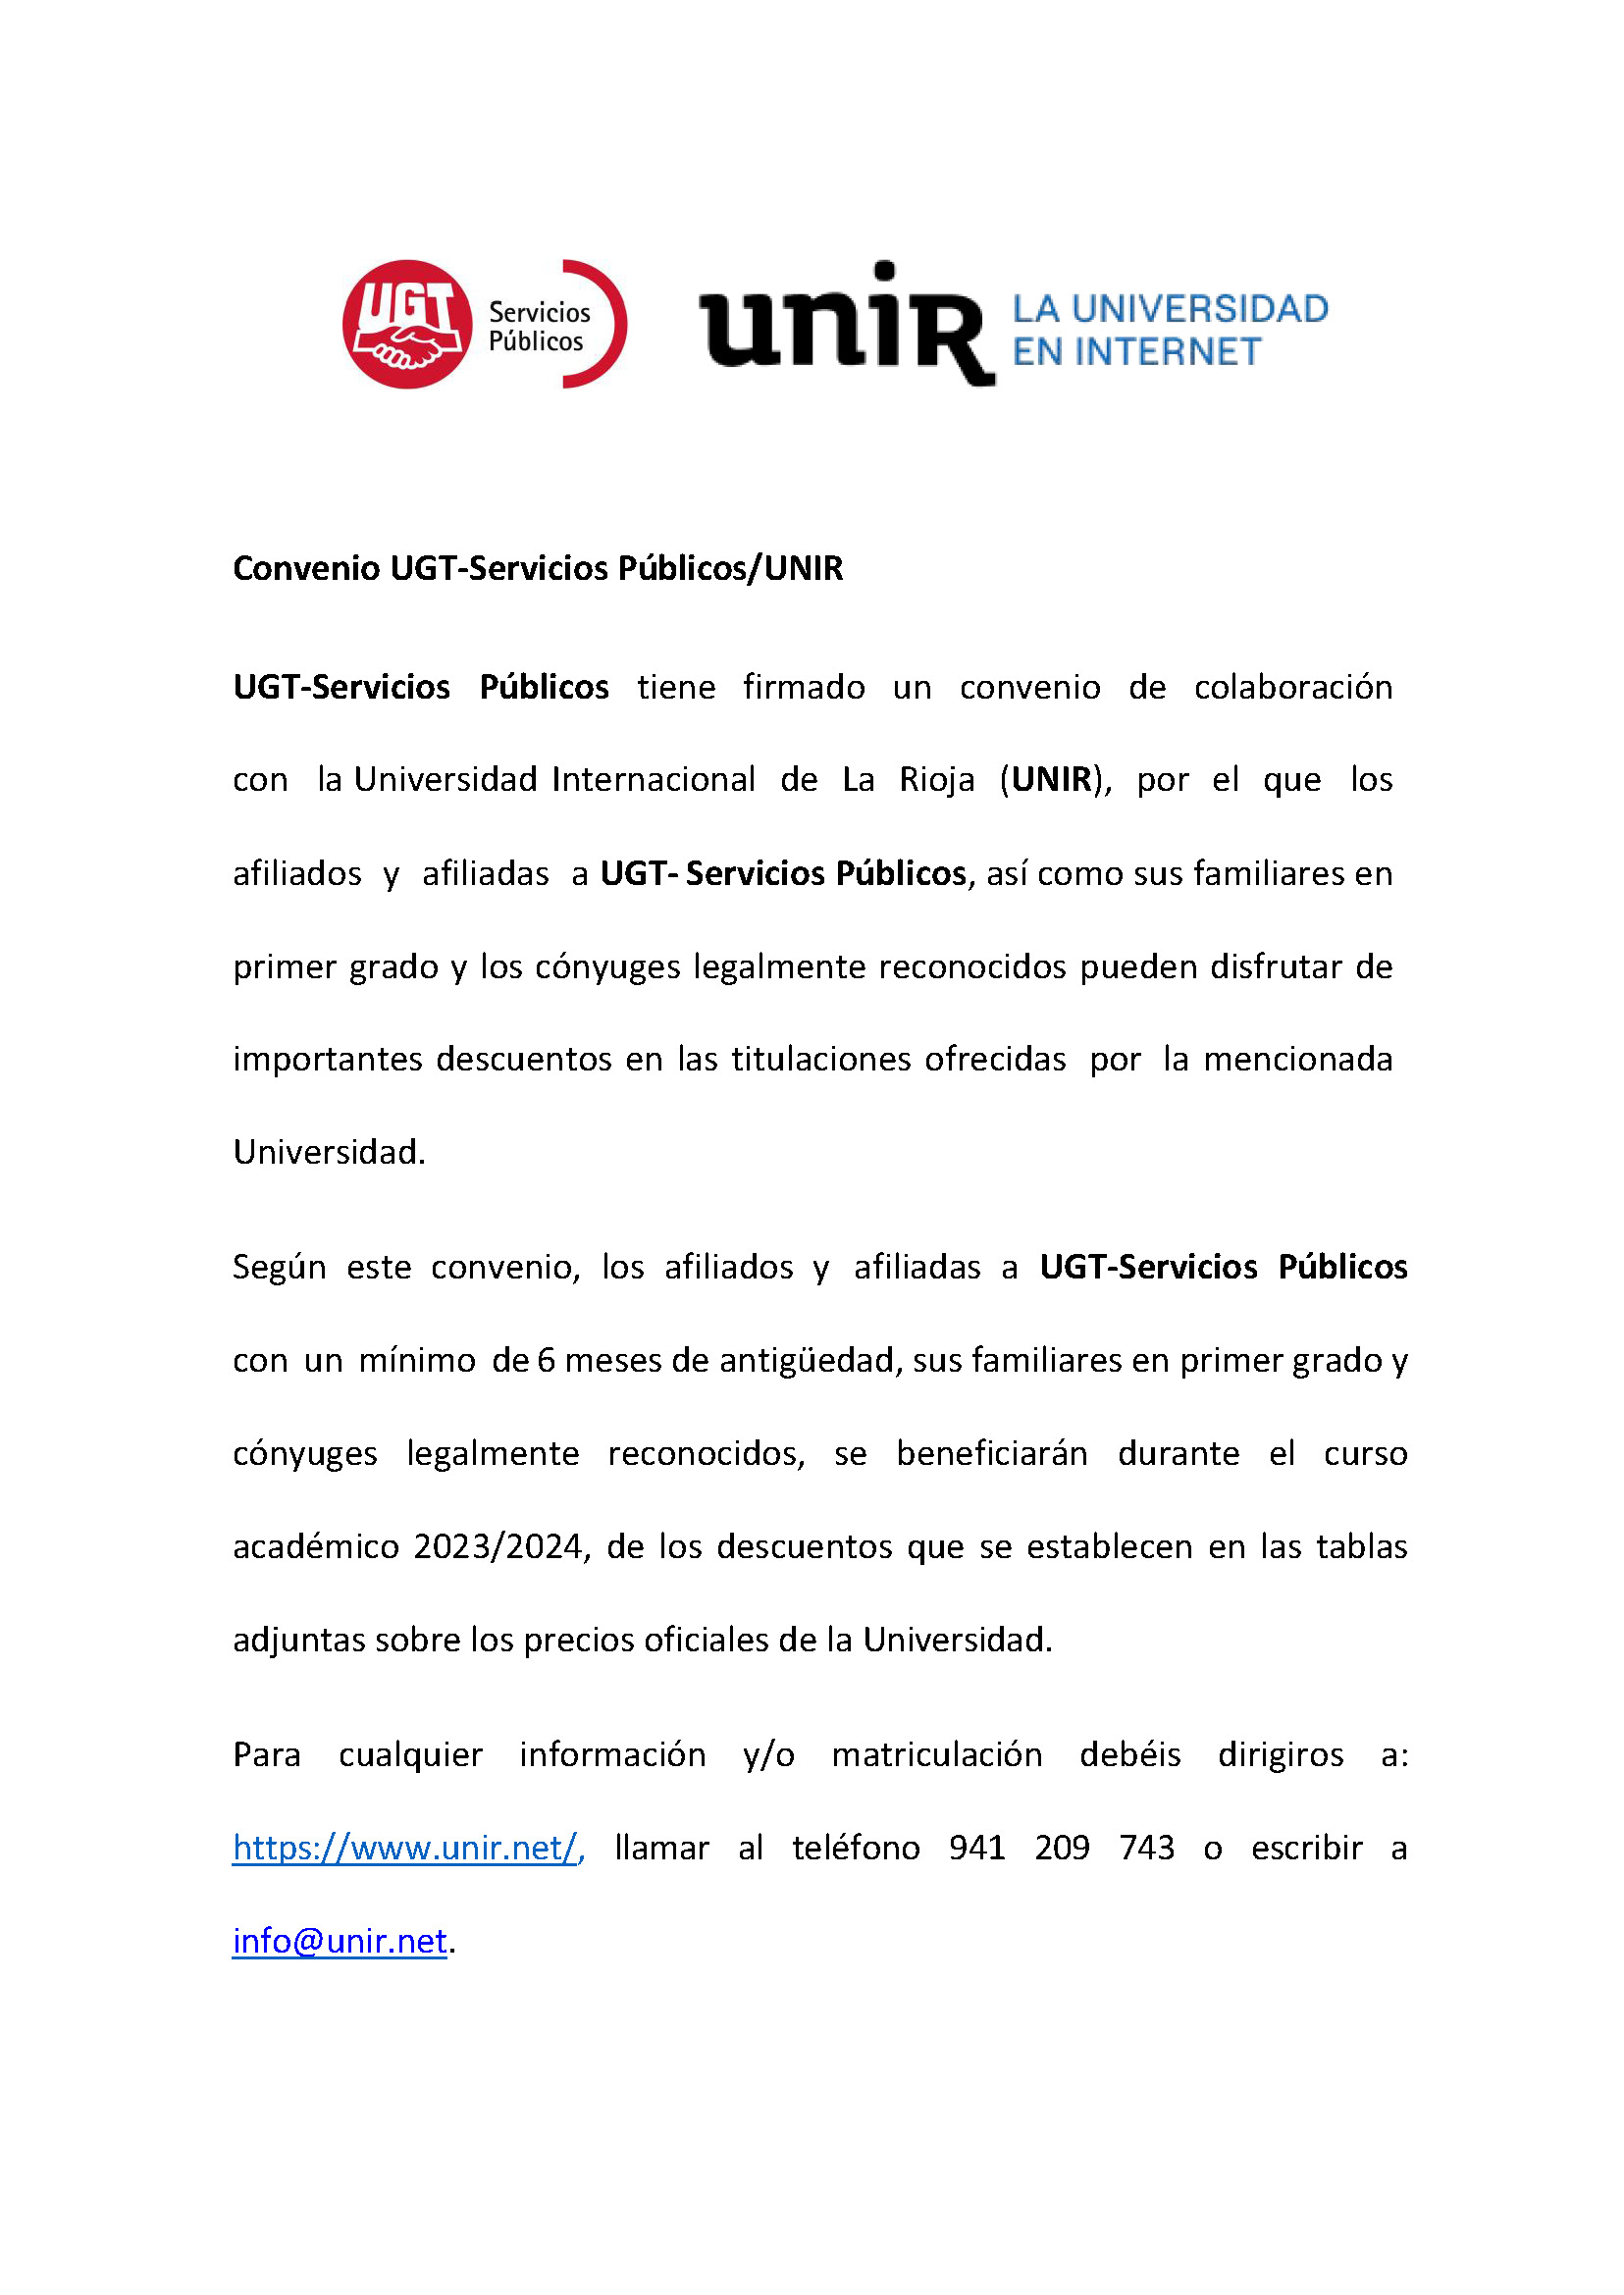 UNIR – CONVENIO DESCUENTO PARA AFILIADOS/AS y FAMILIARES DE 1º GRADO – Descuentos en Grados y Máster 23/24 – (Universidad Internacional de la Rioja).